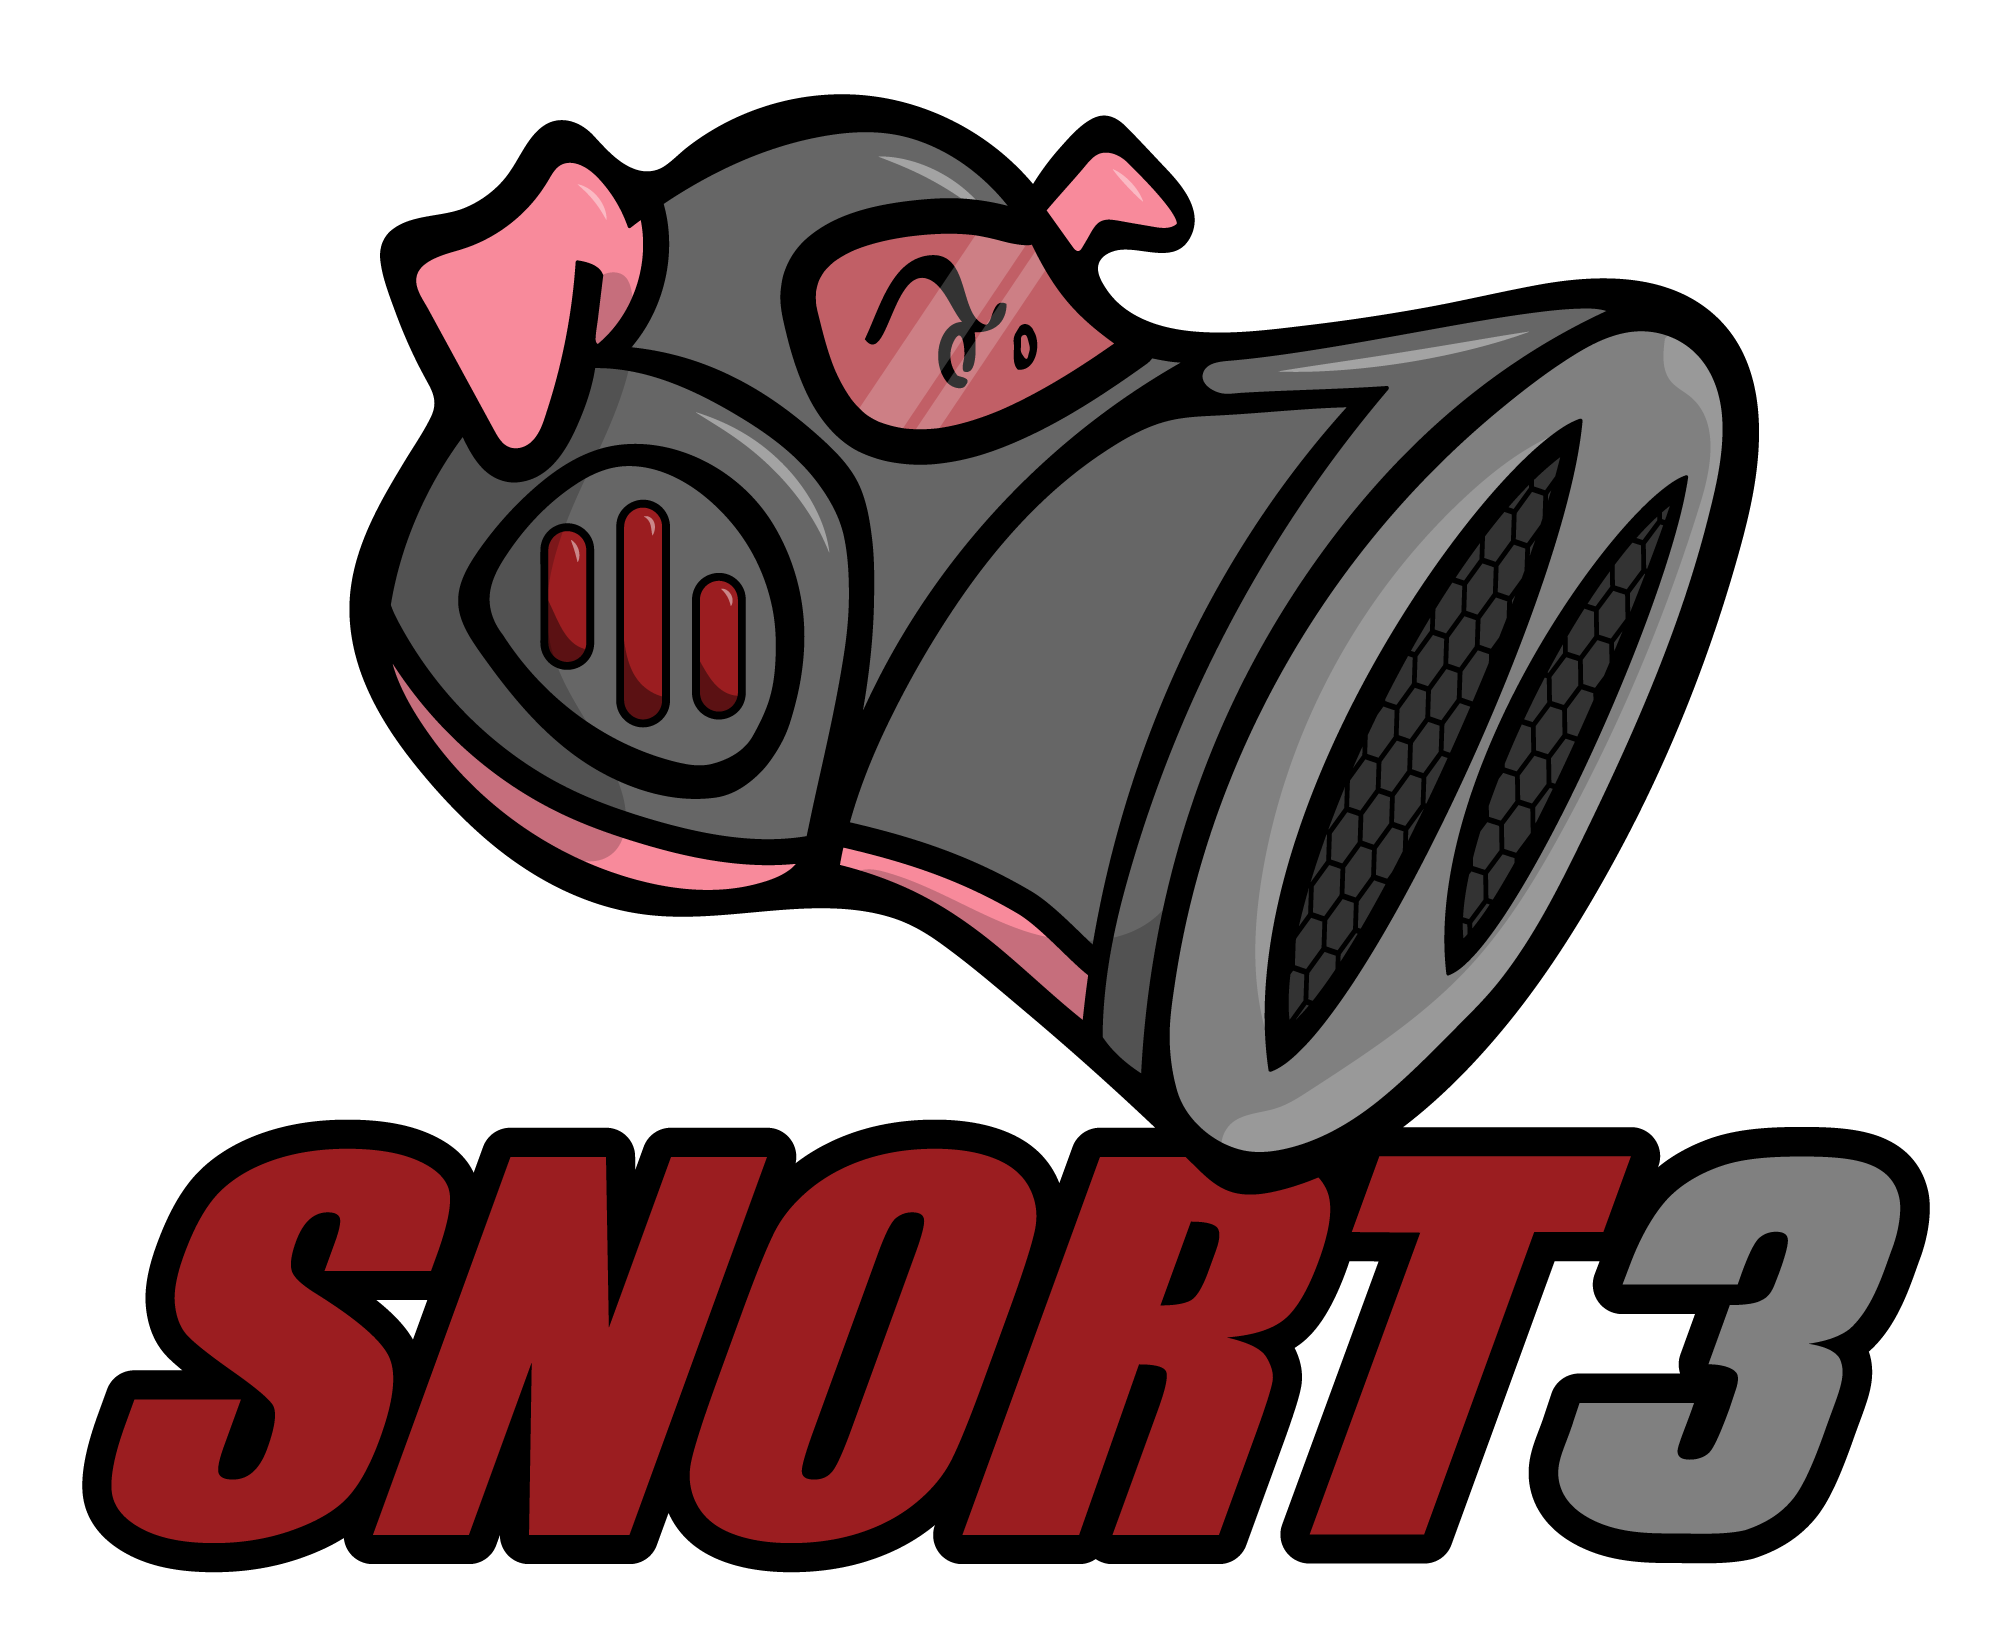 Snort-3-logo_v.png